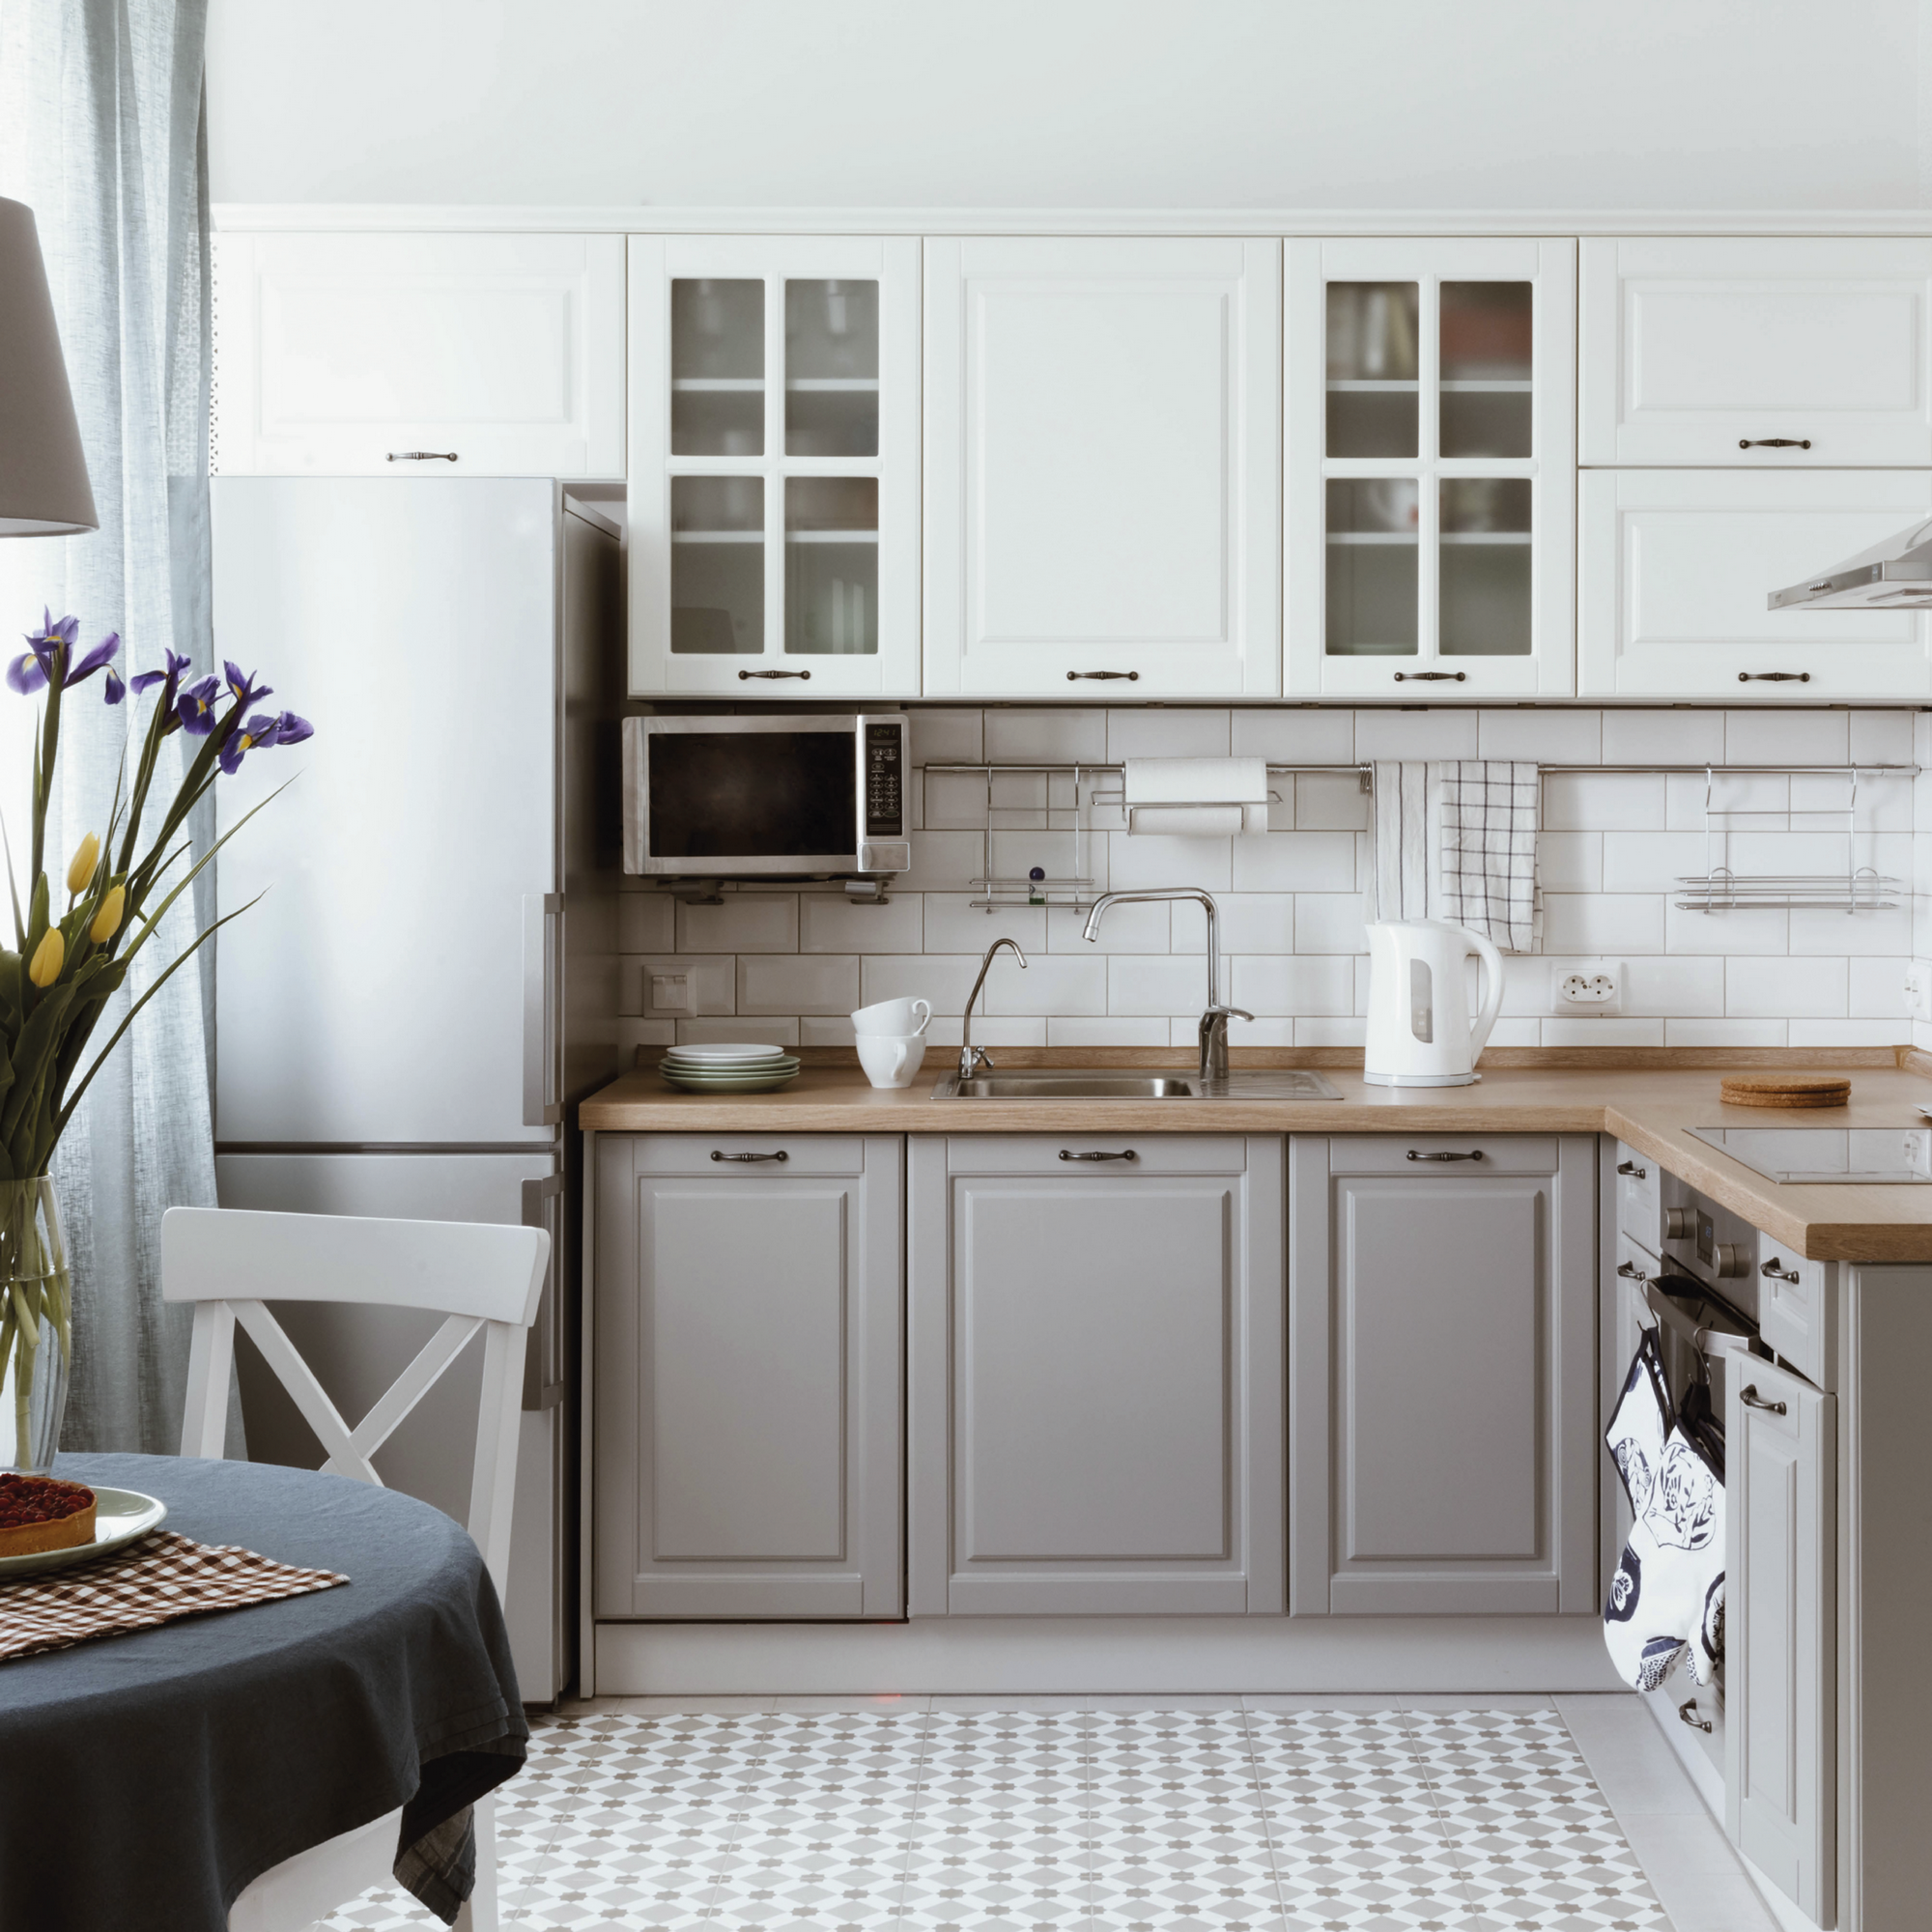 Renovierfarbe für Möbel- und Küchenfronten weiß seidenmatt 2,5 l + product picture